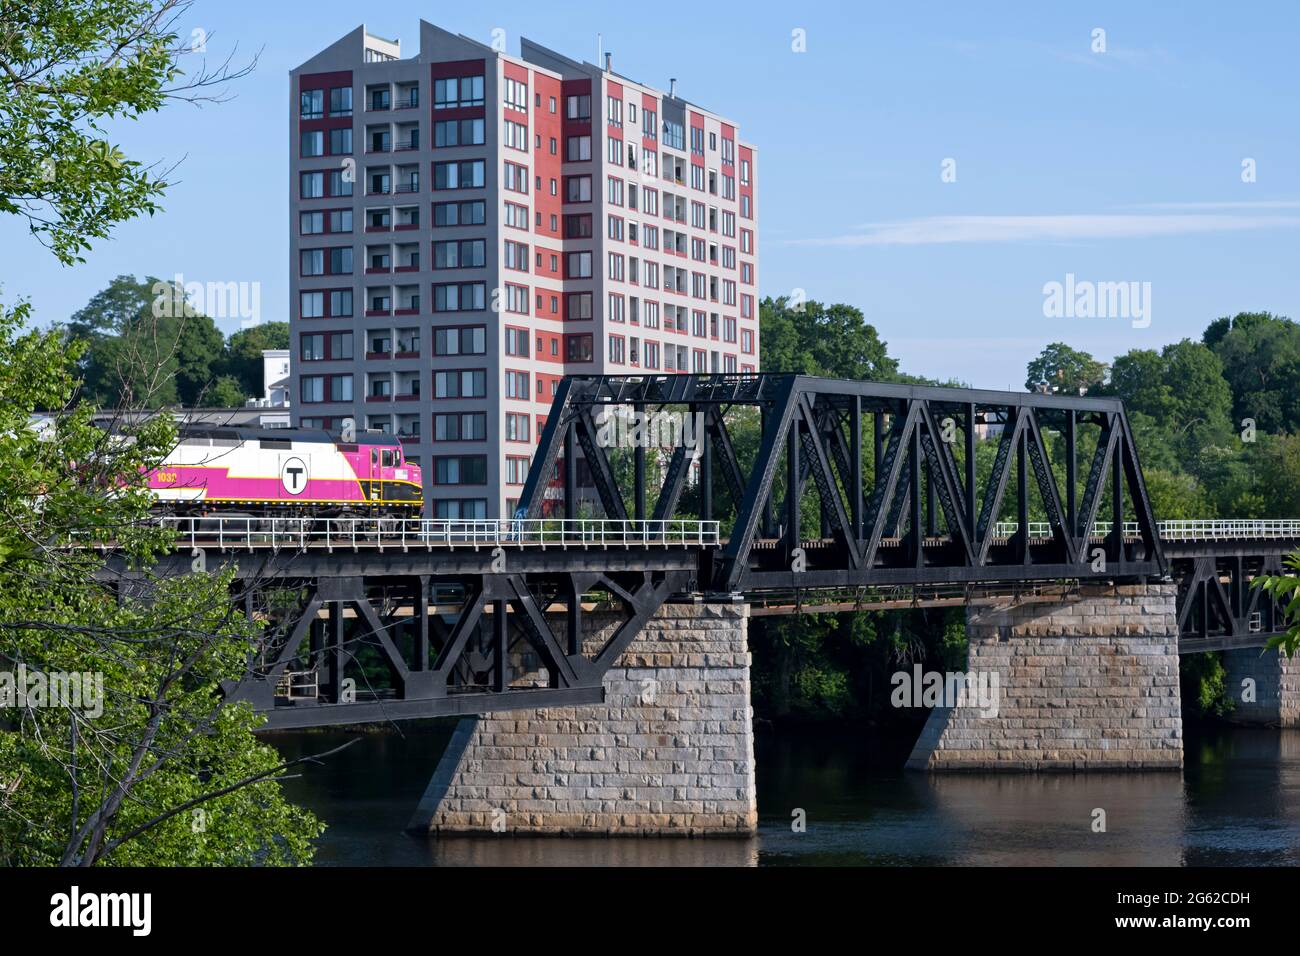 Haverhill, Massachusetts, États-Unis, 28 juin 2021 : un train de banlieue de la Massachusetts Bay Transit Authority traverse la rivière Merrimack.- Haverhill ma Banque D'Images